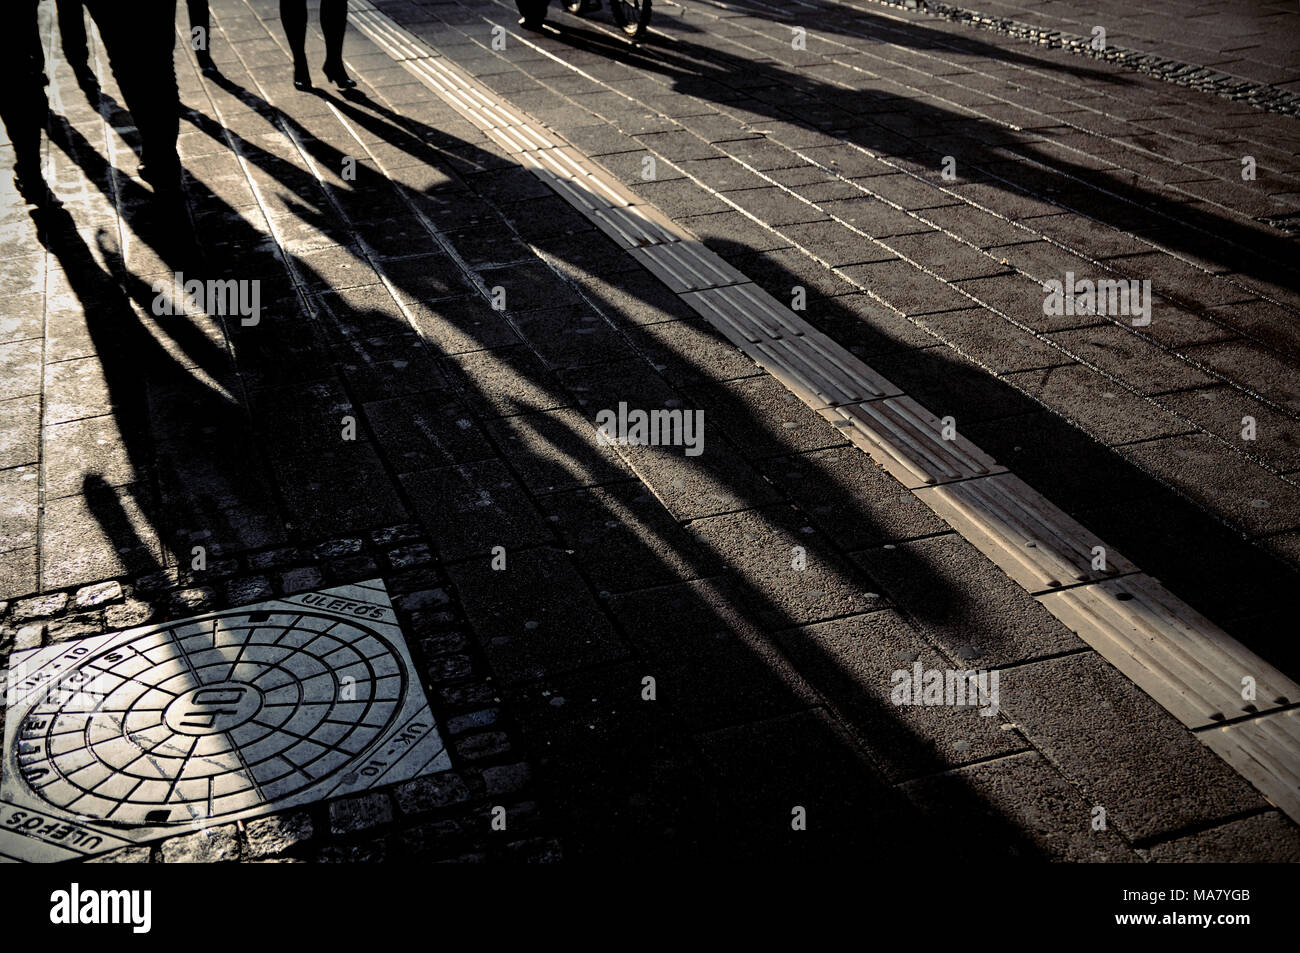 Die Schatten von Menschen in Stroget, eine der längsten Einkaufsstraßen in Europa, Kopenhagen, Dänemark Stockfoto